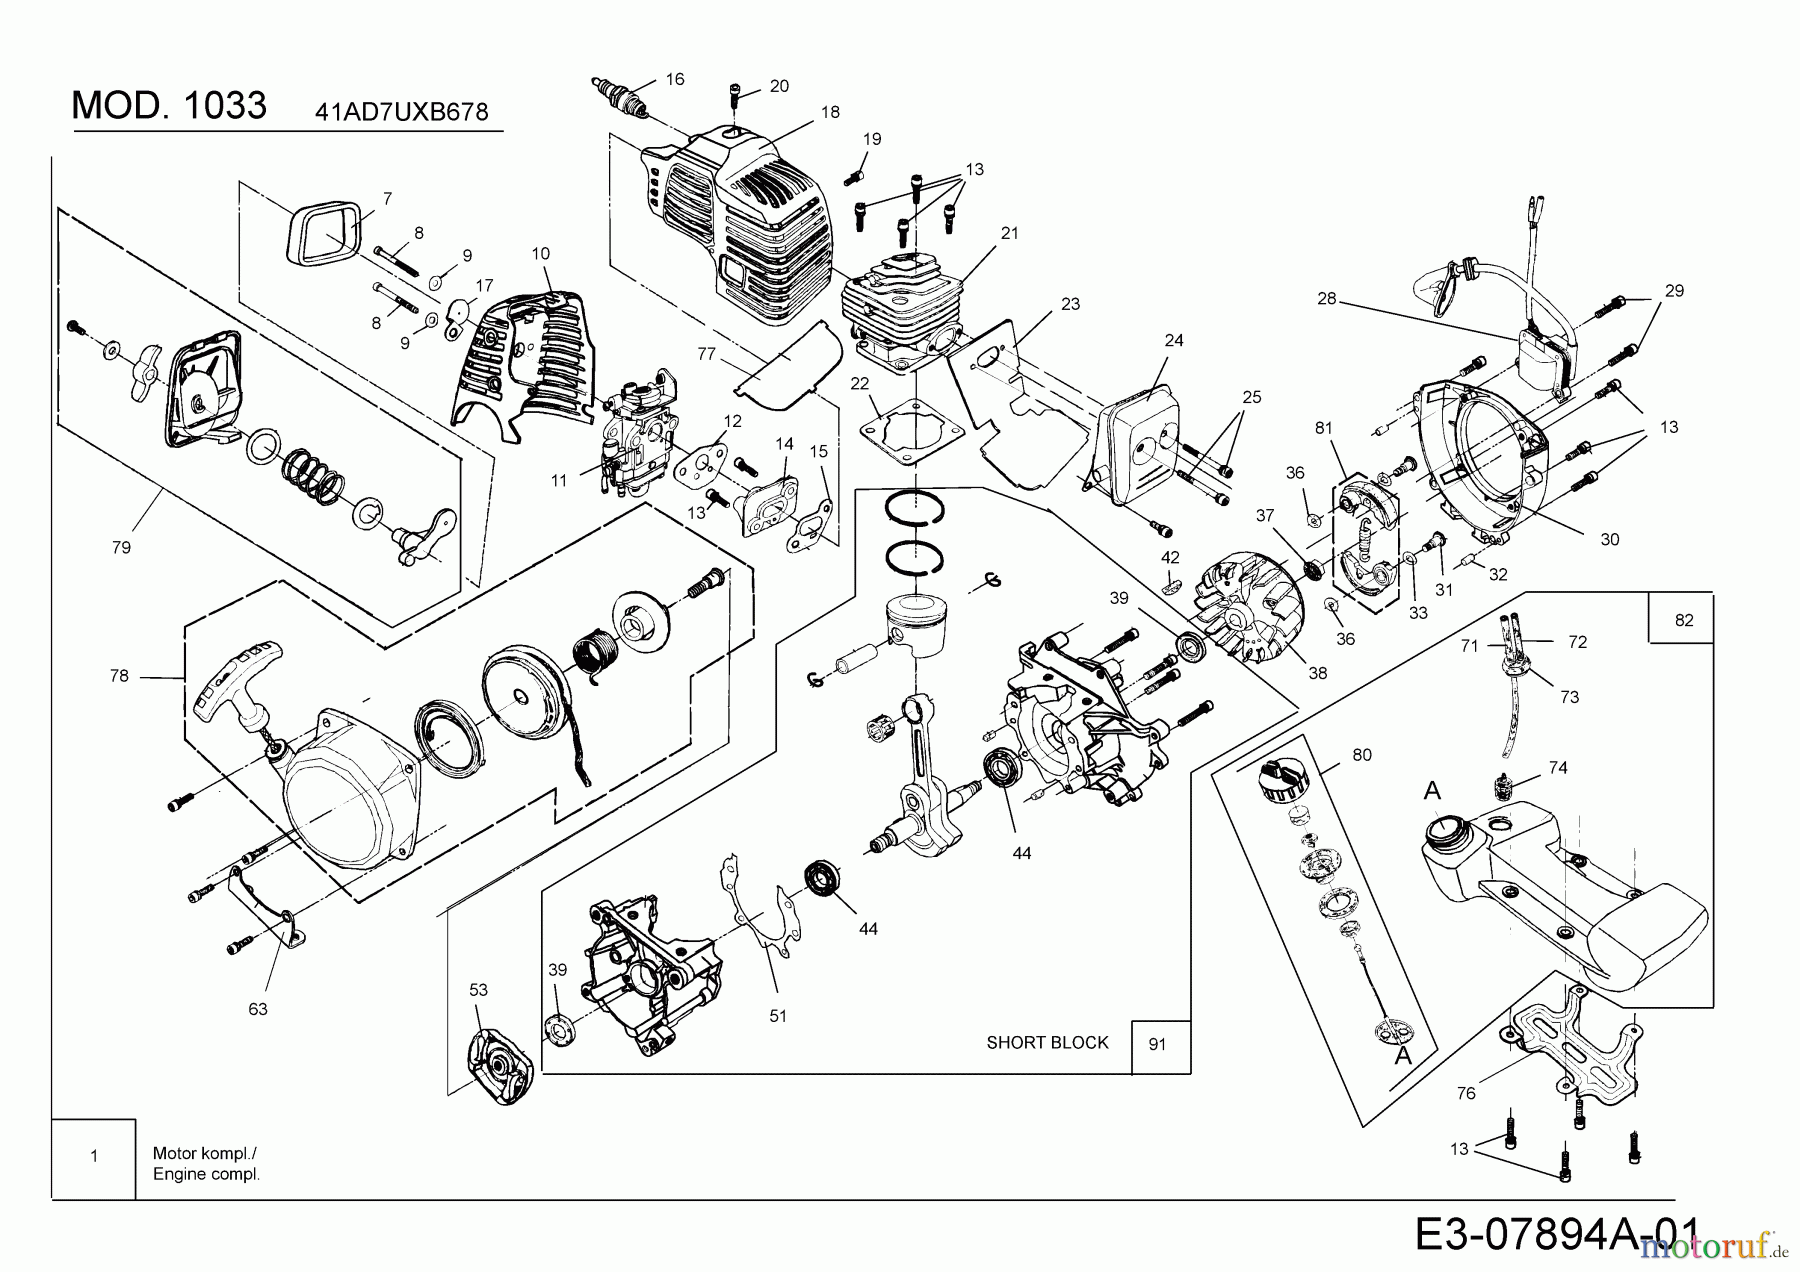  MTD Motorsensen 1033 41AD7UXB678  (2020) Motor